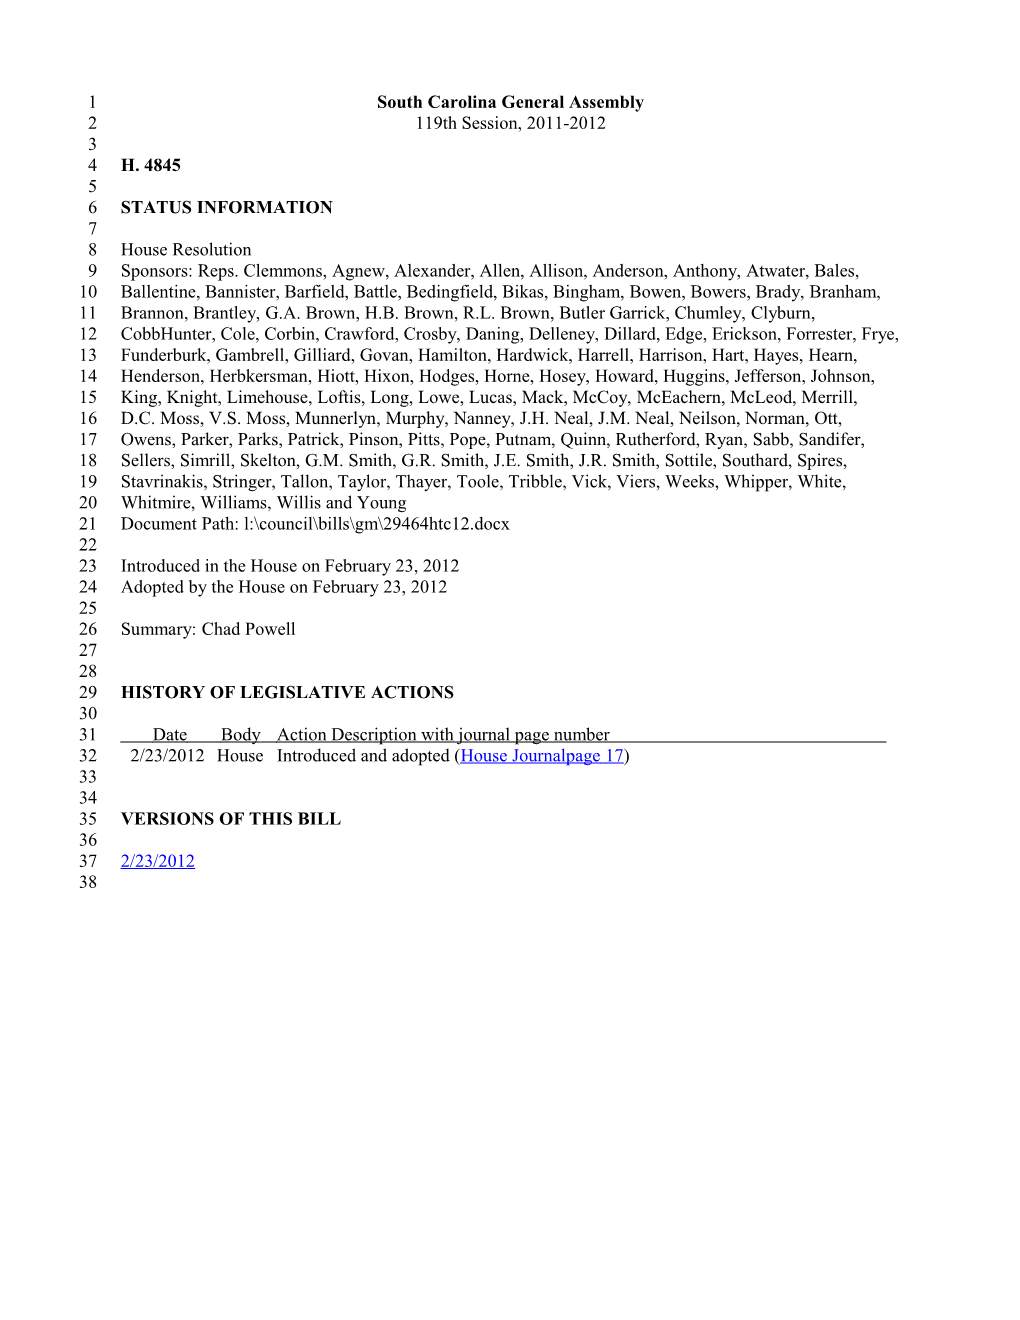 2011-2012 Bill 4845: Chad Powell - South Carolina Legislature Online